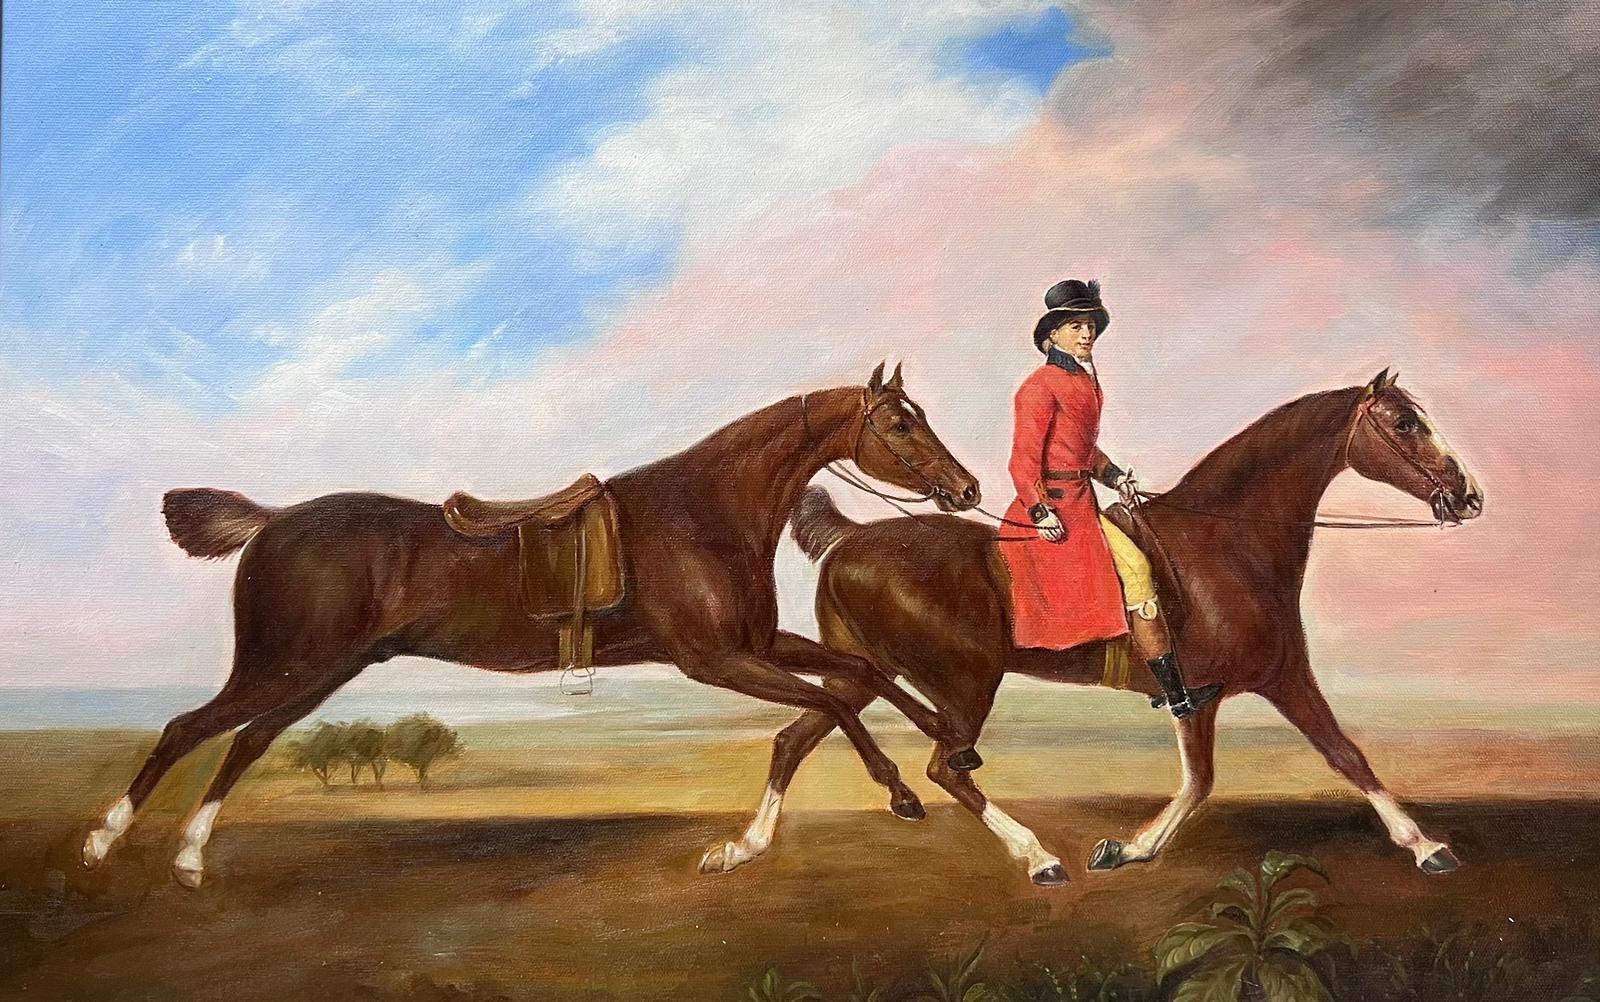 Animal Painting European Artist - Grande peinture à l'huile d'art sportif représentant un cheval à cheval au dos avec un autre cheval encadré